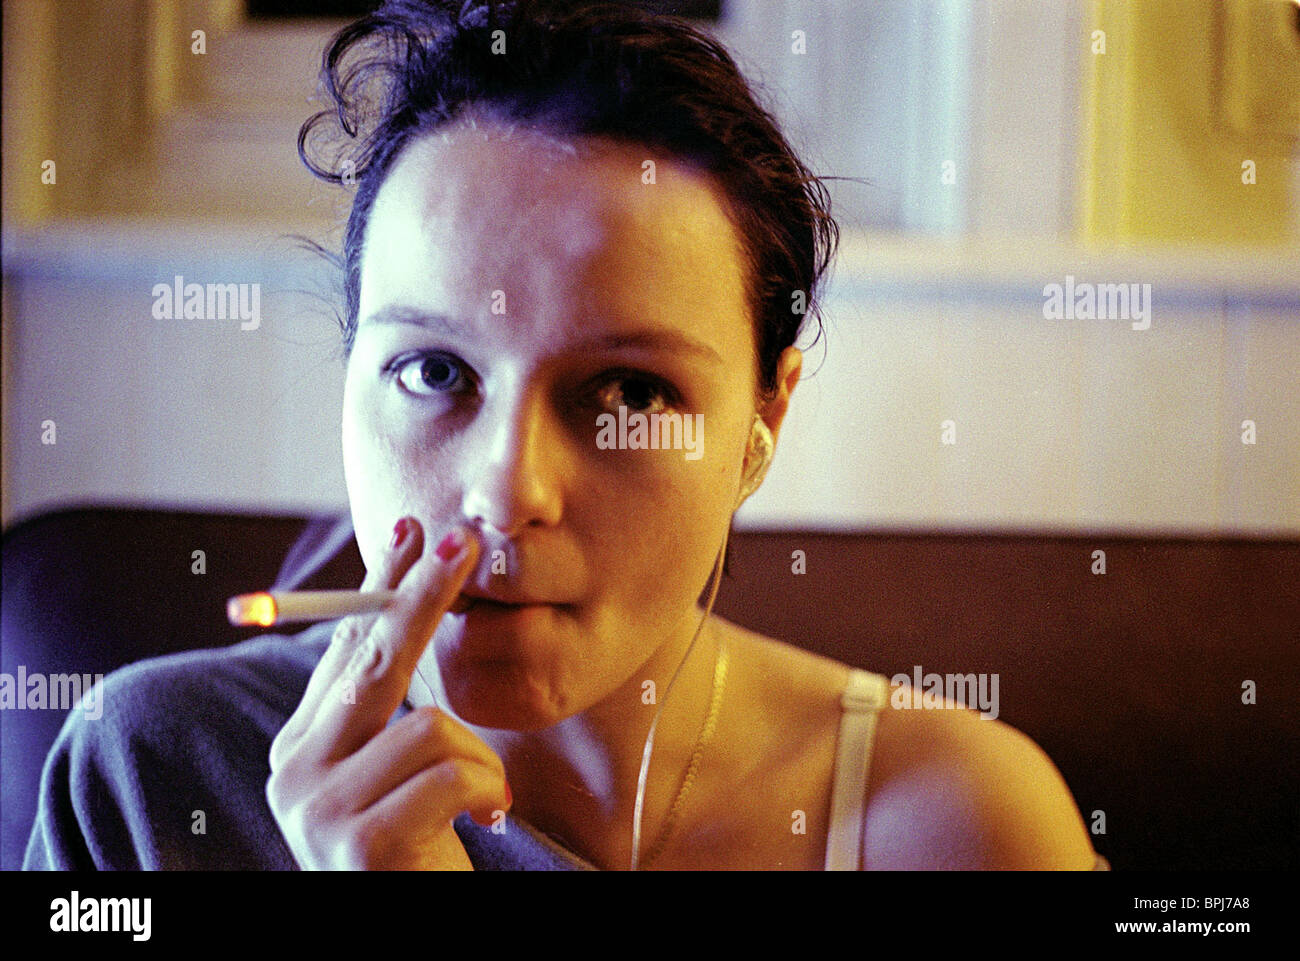 Samantha Morton røyker sigarett (eller hasj)
